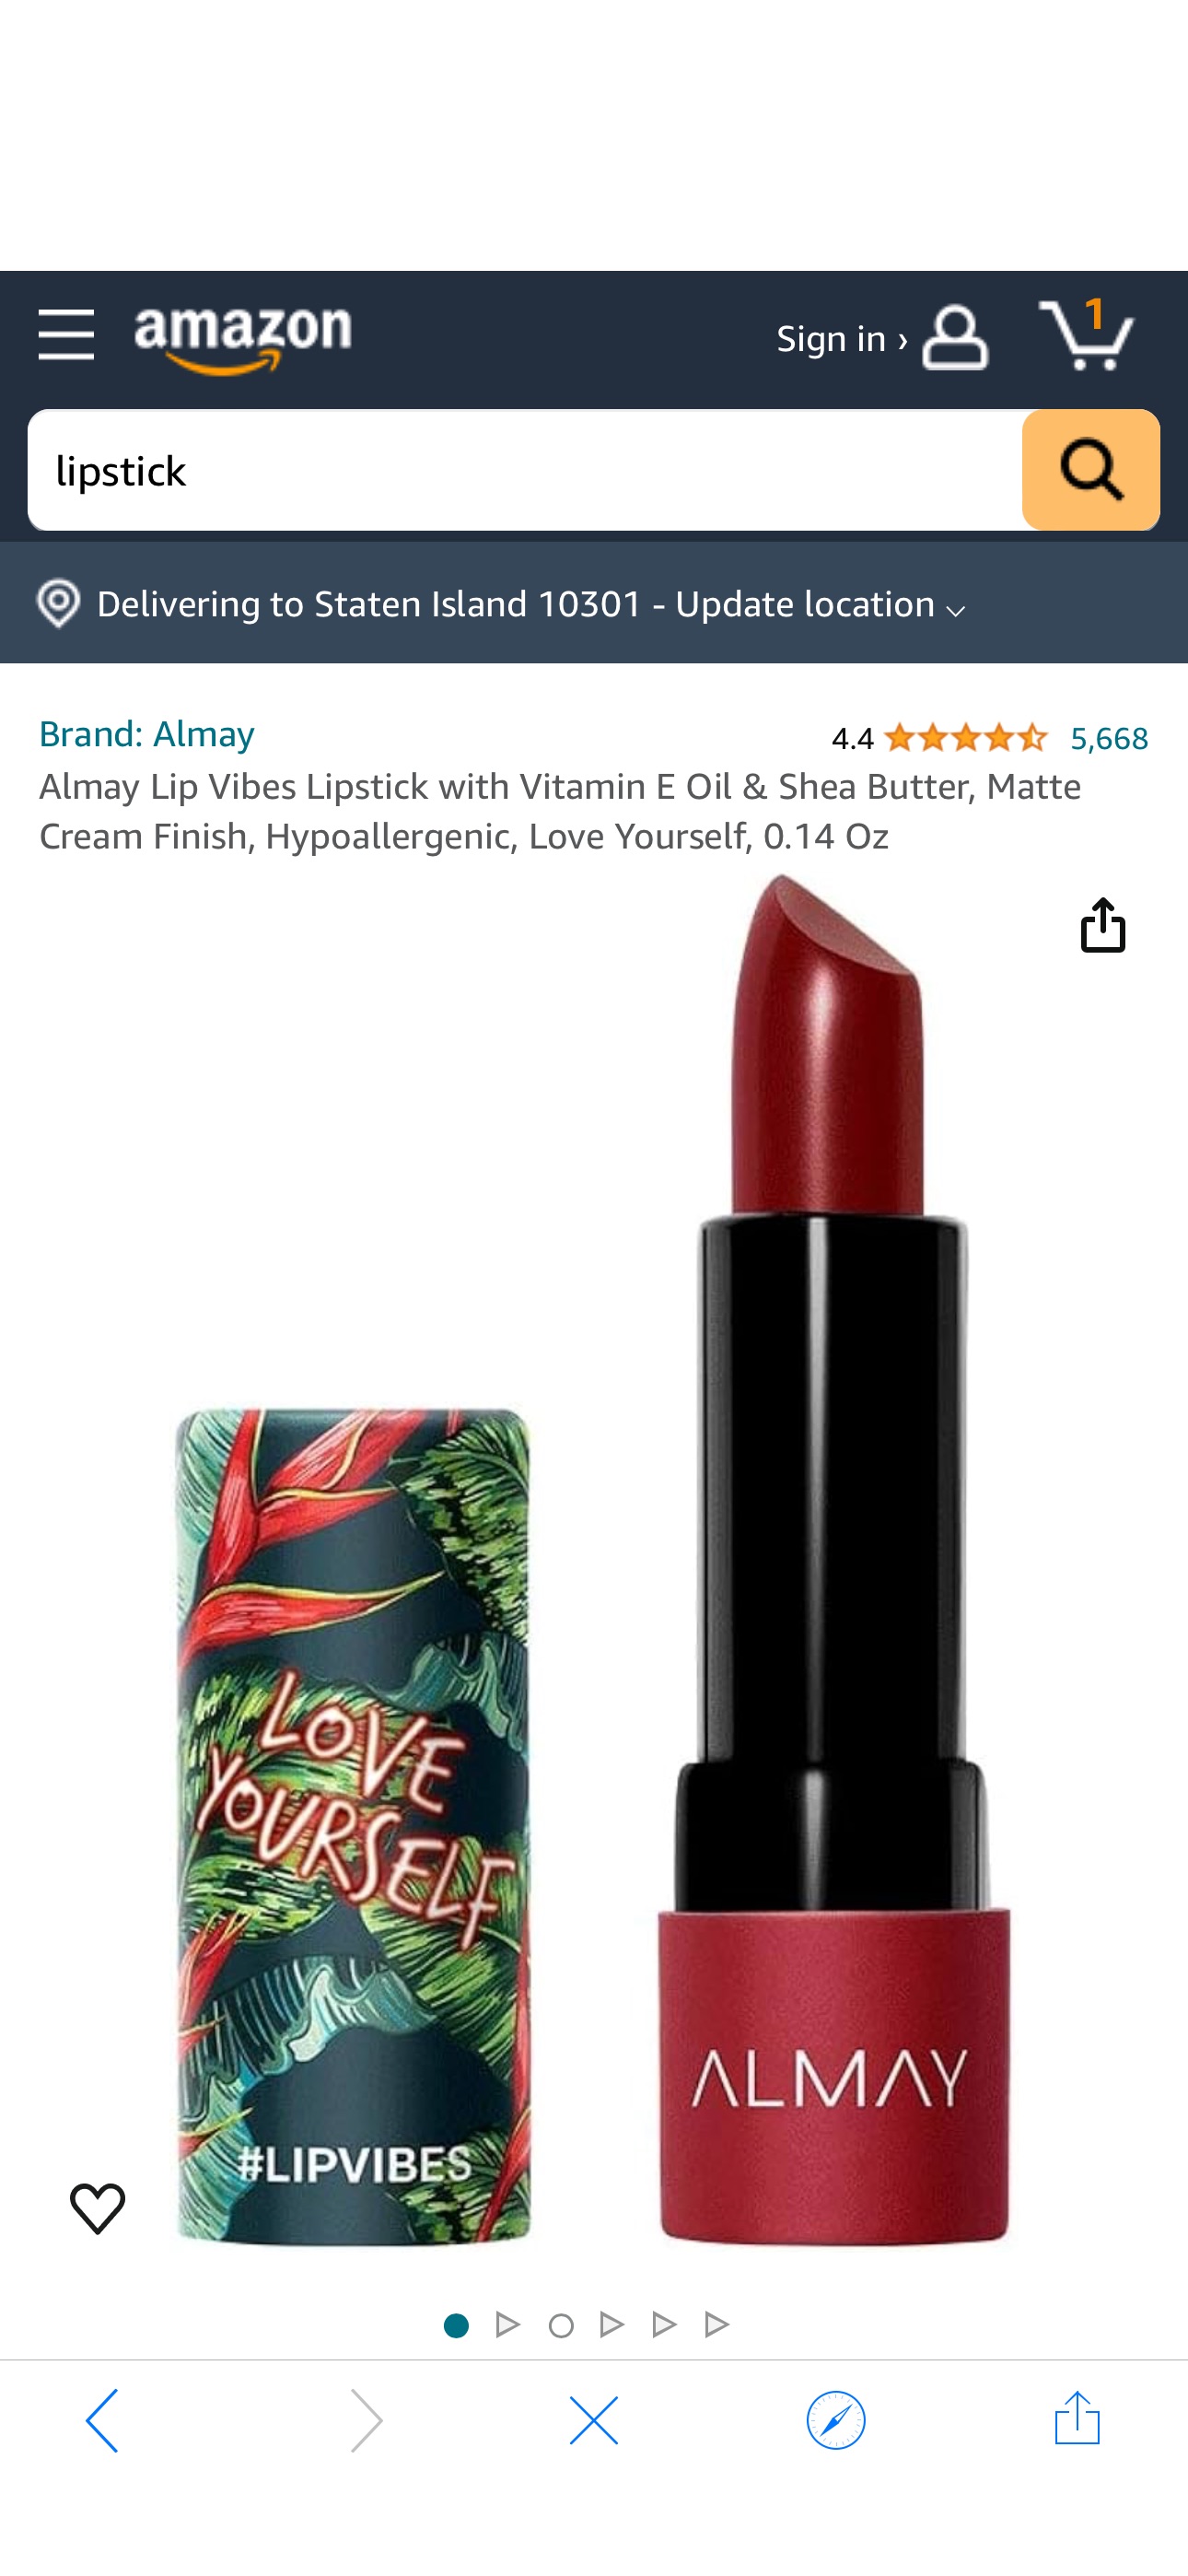 Amazon.com : Almay Lip Vibes Lipstick with Vitamin E Oil & Shea Butter, Matte Cream Finish, Hypoallergenic, Love Yourself, 0.14 Oz : Beauty & Personal Care